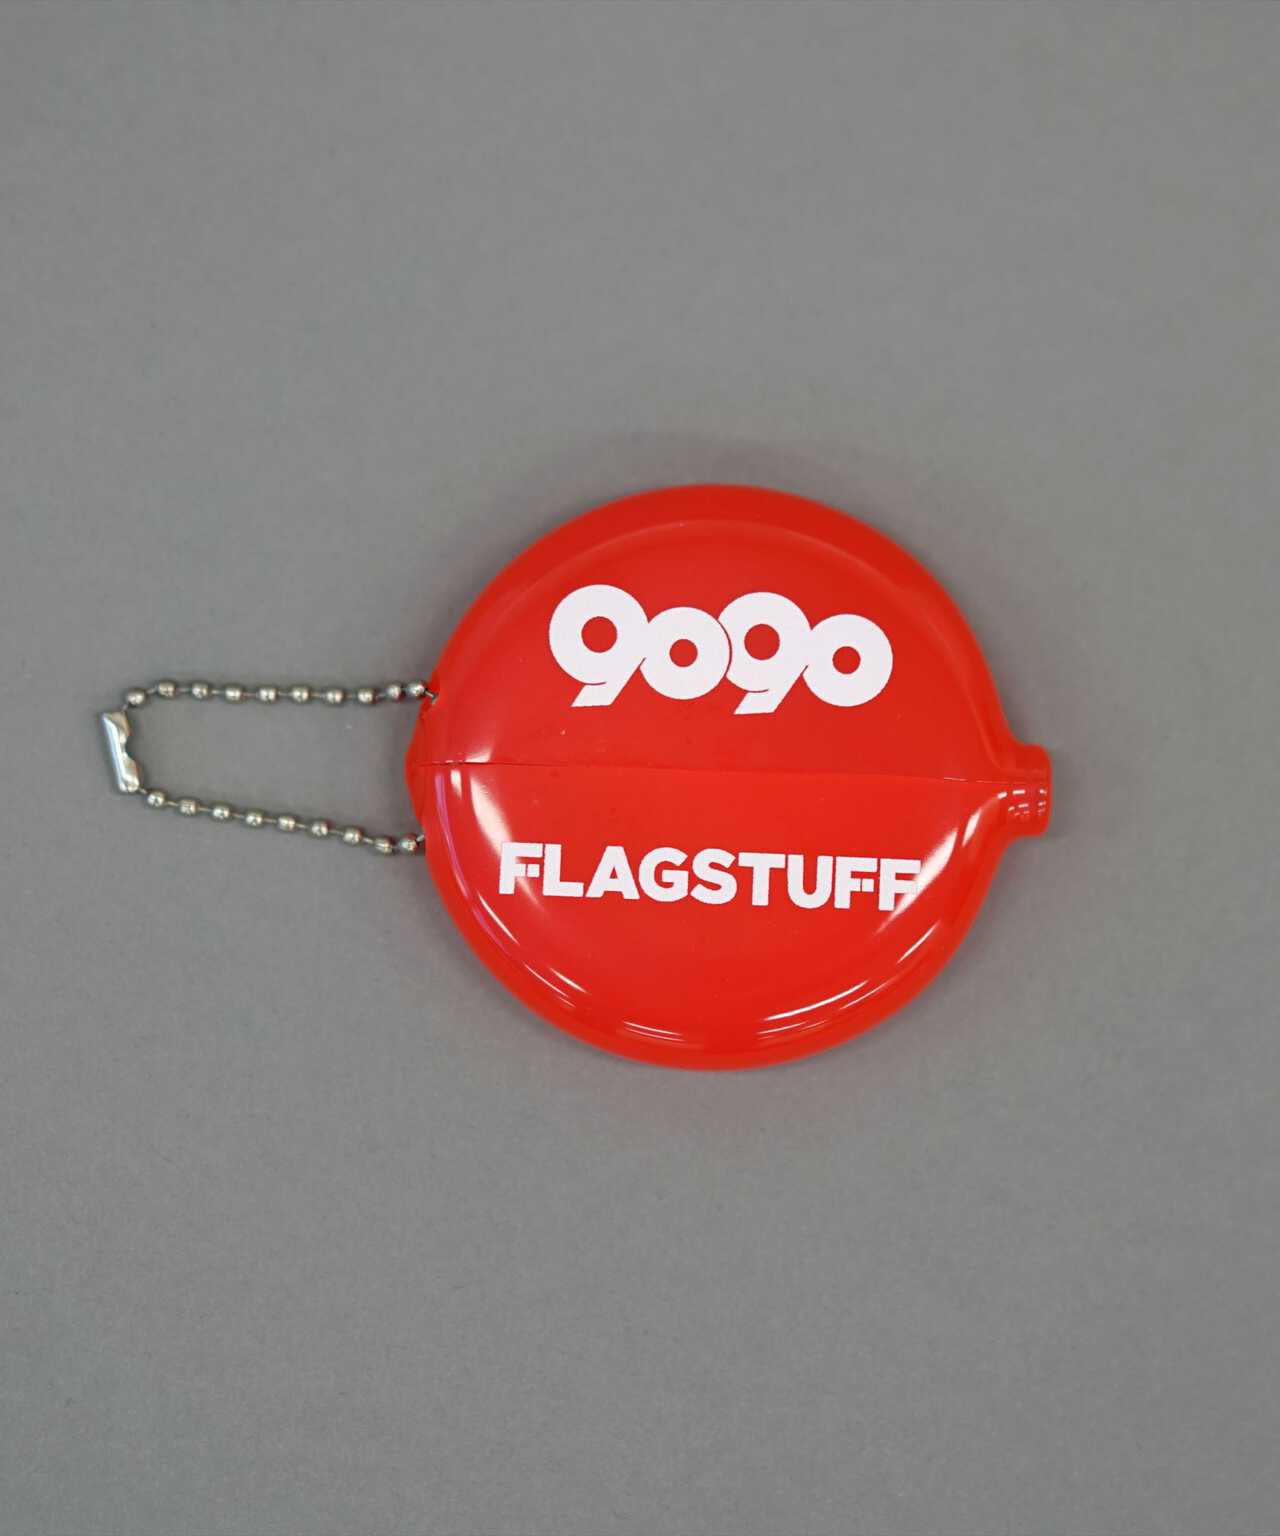 F-LAGSTUF-F×9090/フラグスタフ×ナインティナインティ/オリジナルコインケース